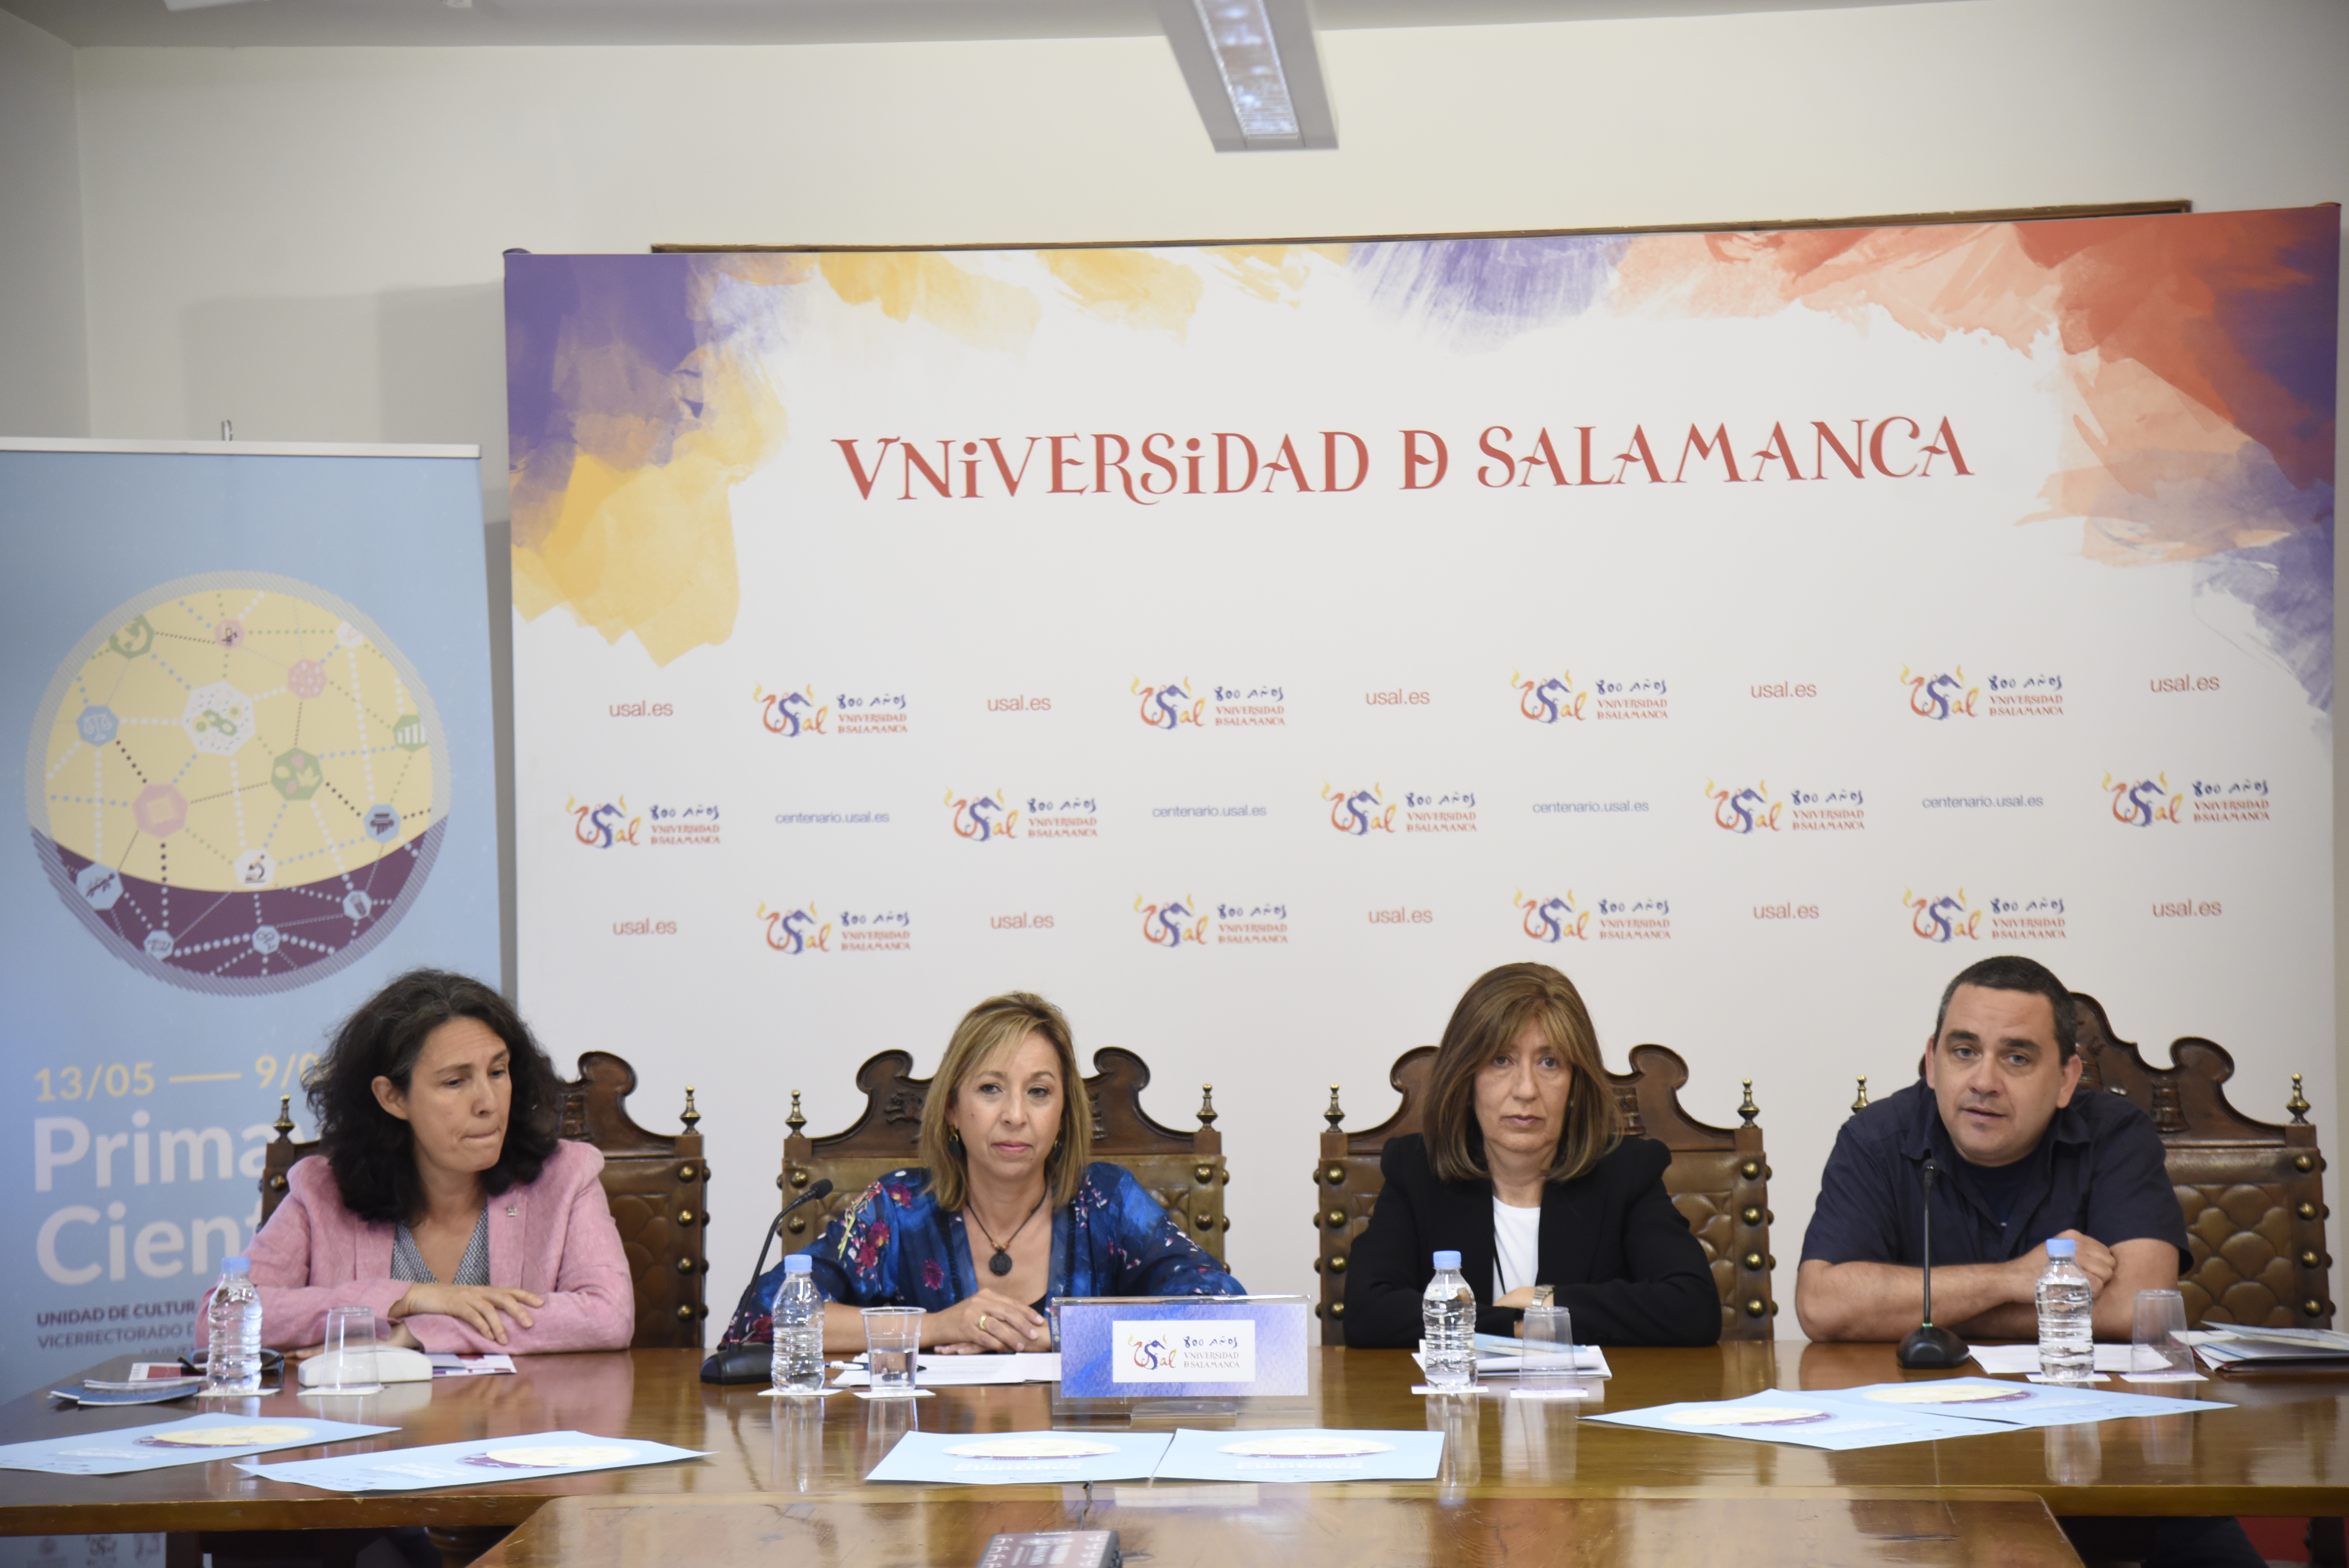 La Primavera Científica 2019 de la universidad de Salamanca programa un mes de actividades dirigidas a fomentar las vocaciones científicas desde los 3 años